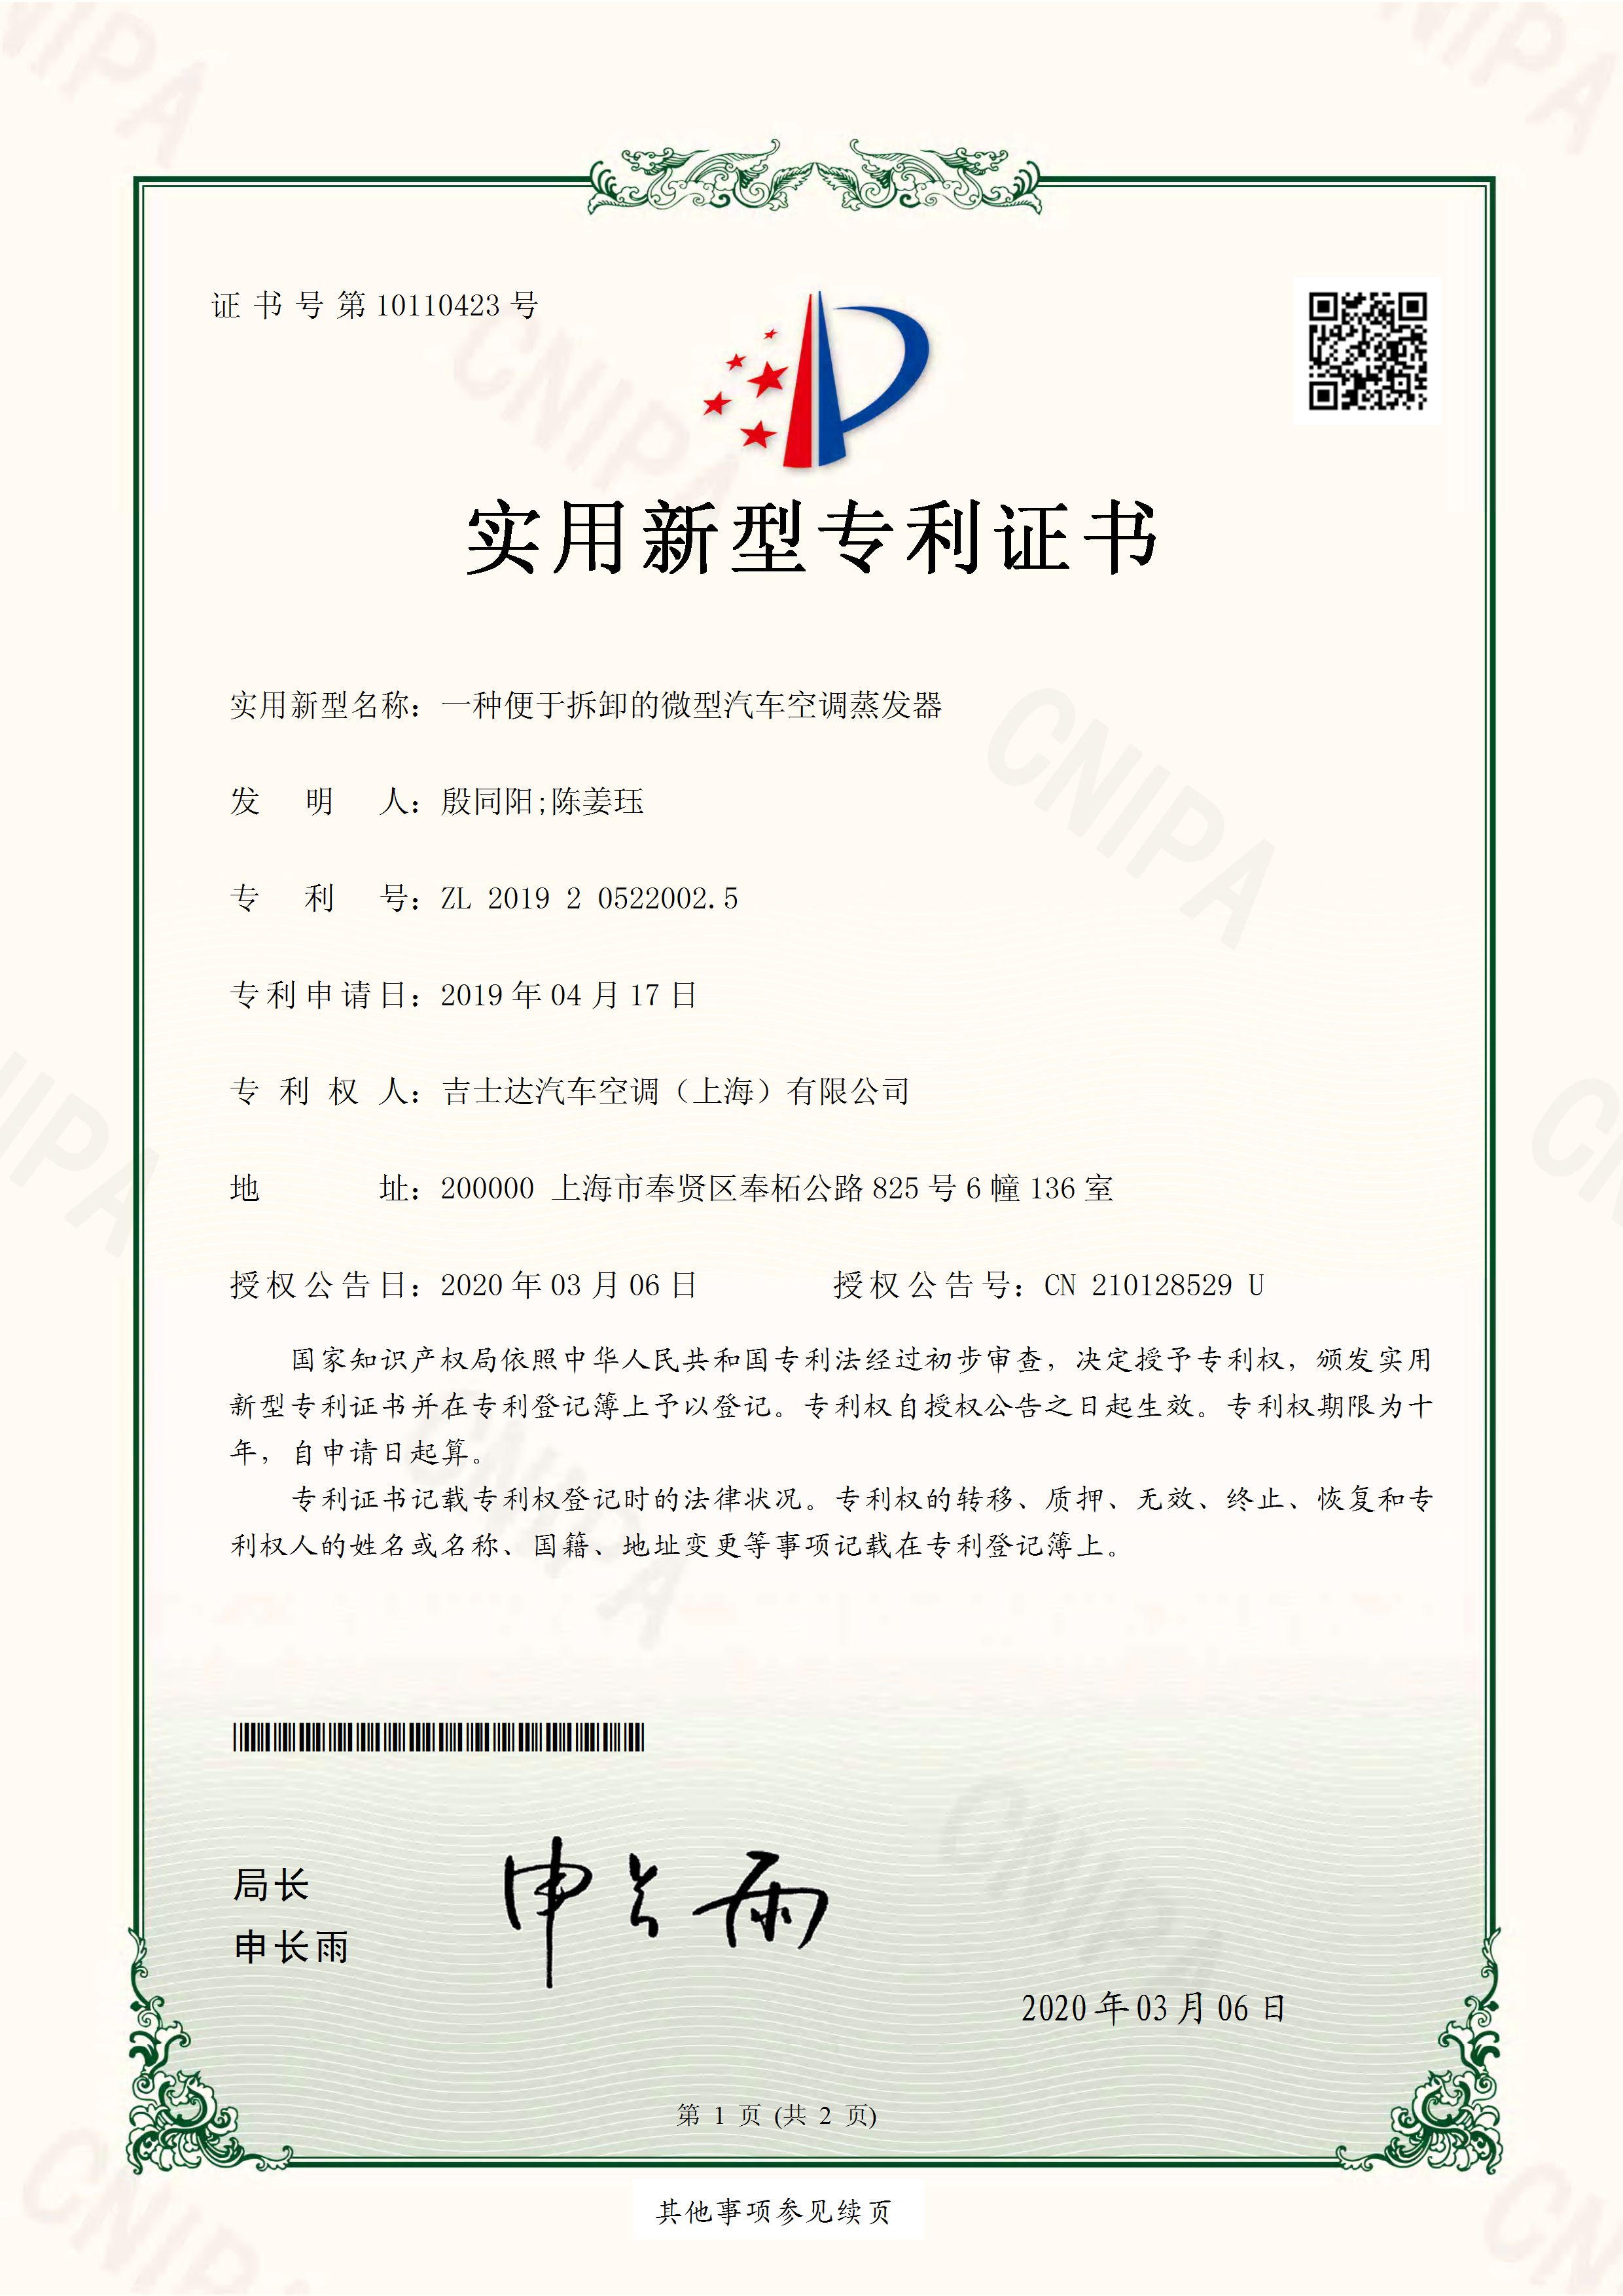 吉士达汽车空调1件实用专利证书--2019205220025_页面_1